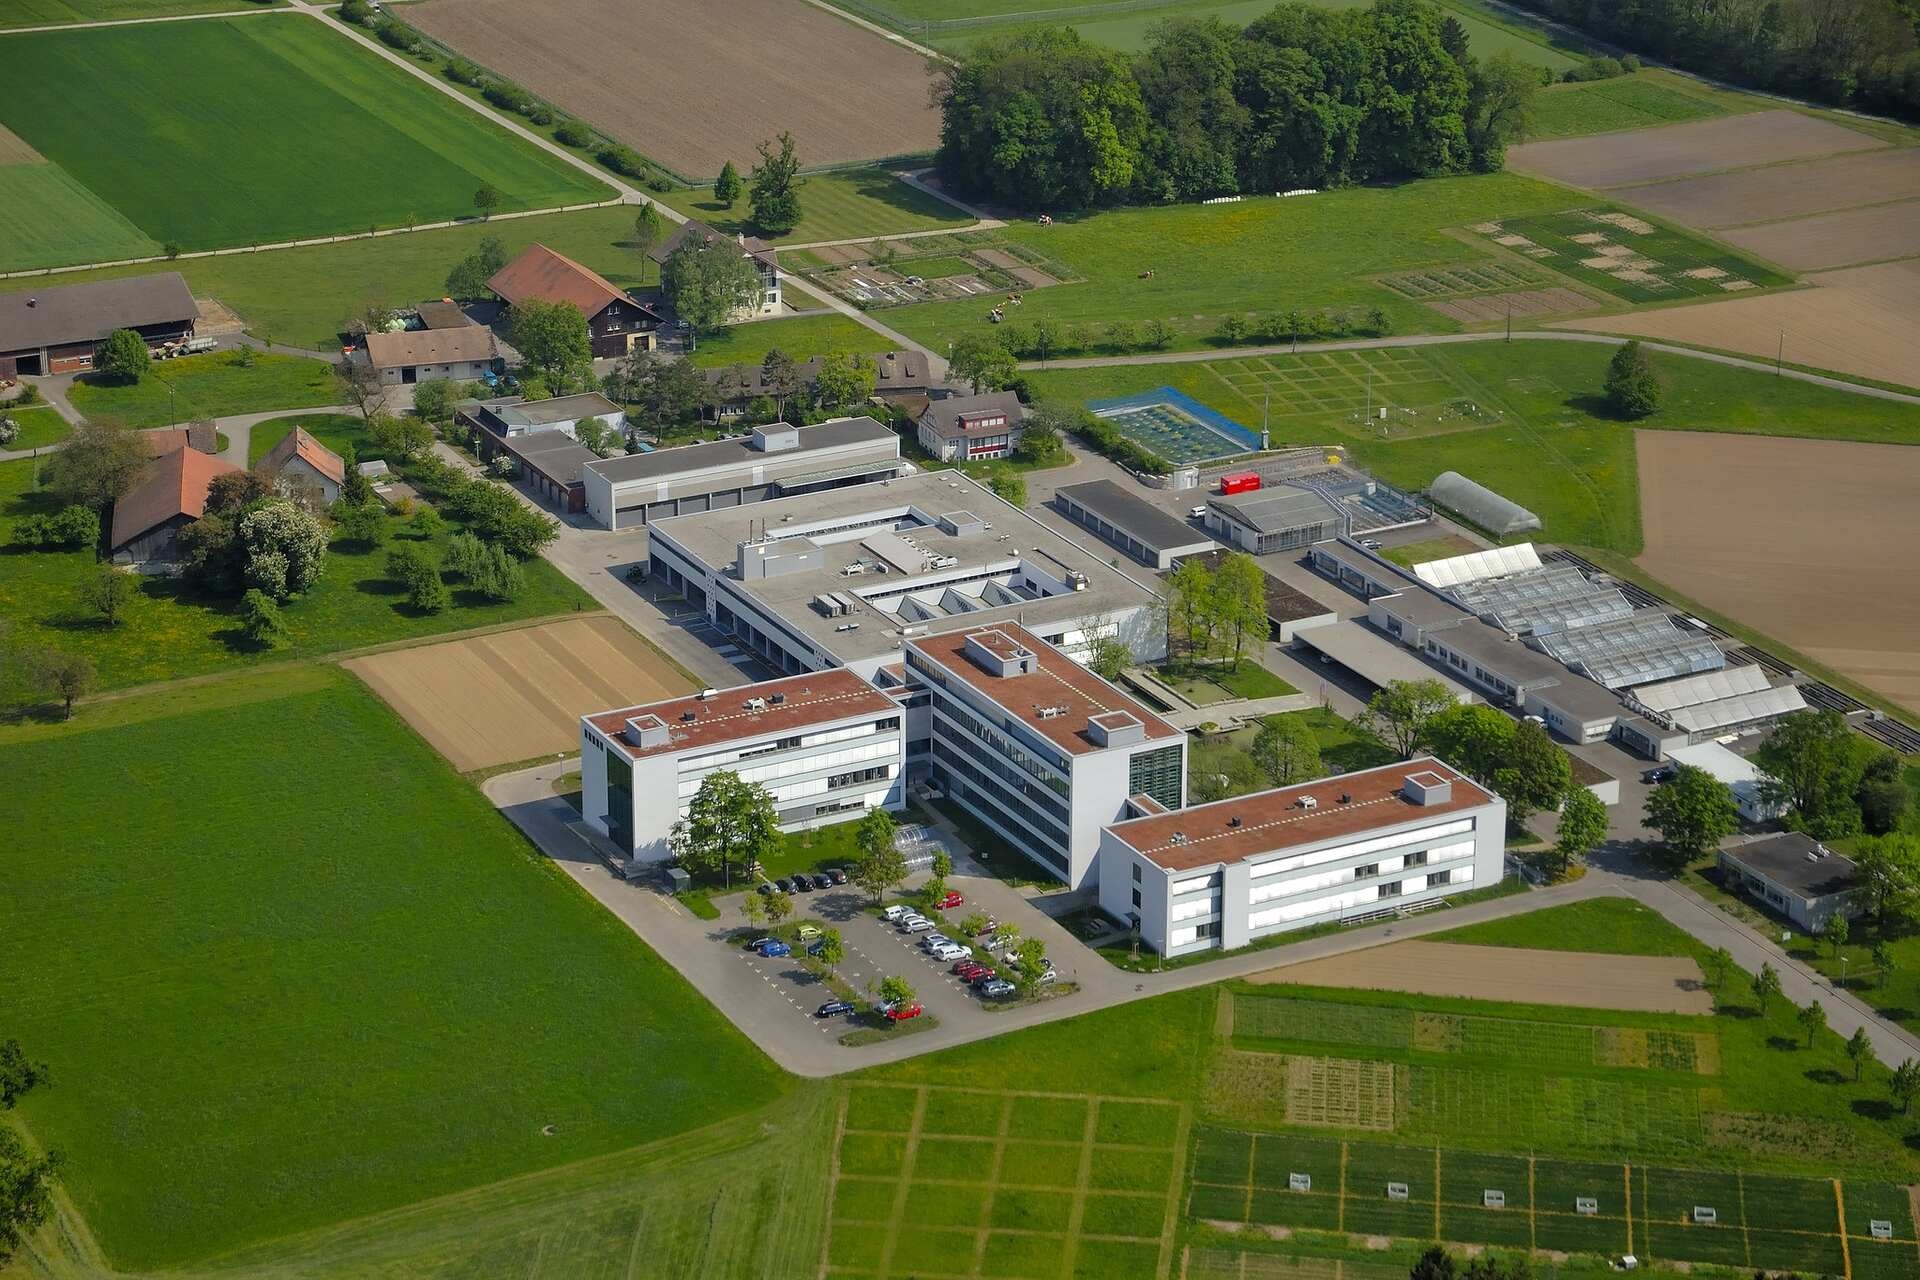 Geneettisesti muunneltu ohra: Agroscope hankkii yli kolmen vuoden ajan tietoa kasvien käyttäytymisestä avopelloilla Reckenholzin alueella (Zürich) liittovaltion ympäristöviraston luvalla